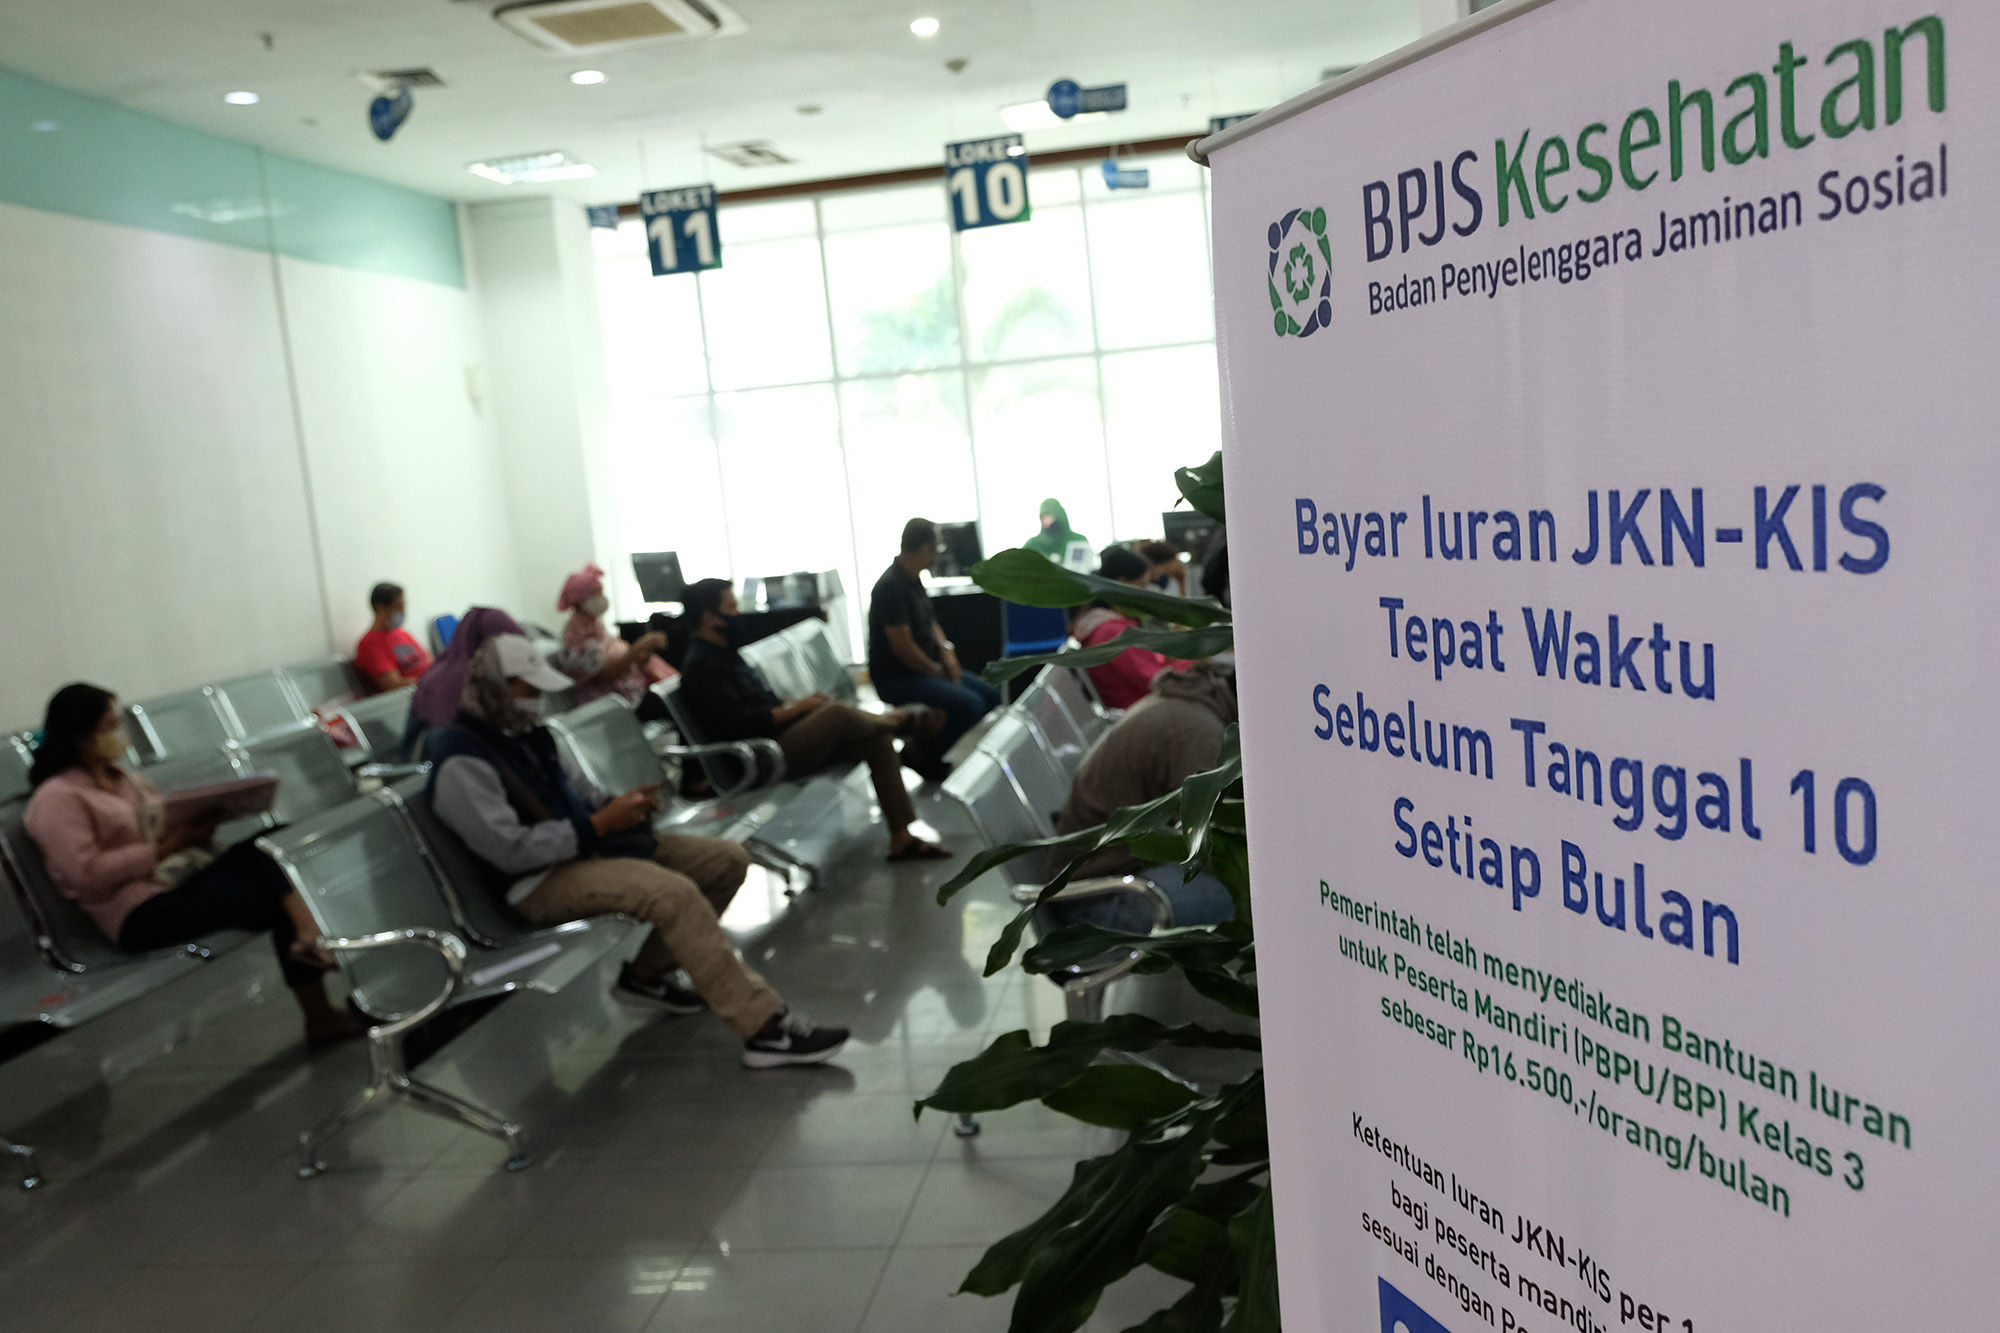 <p>Warga peserta BPJS Kesehatan menunggu giliran pelayanan di Jakarta, Selasa, 14 Juni 2020. BPJS Kesehatan menyatakan telah menuntaskan pembayaran klaim rumah sakit per 1 Juli sebesar Rp3,70 triliun seiring awal bulan Juli BPJS Kesehatan telah menerima iuran peserta Penerima Iuran Bantuan (PIB) APBN dari pemerintah sebesar Rp4,05 triliun. Foto: Ismail Pohan/TrenAsia</p>
